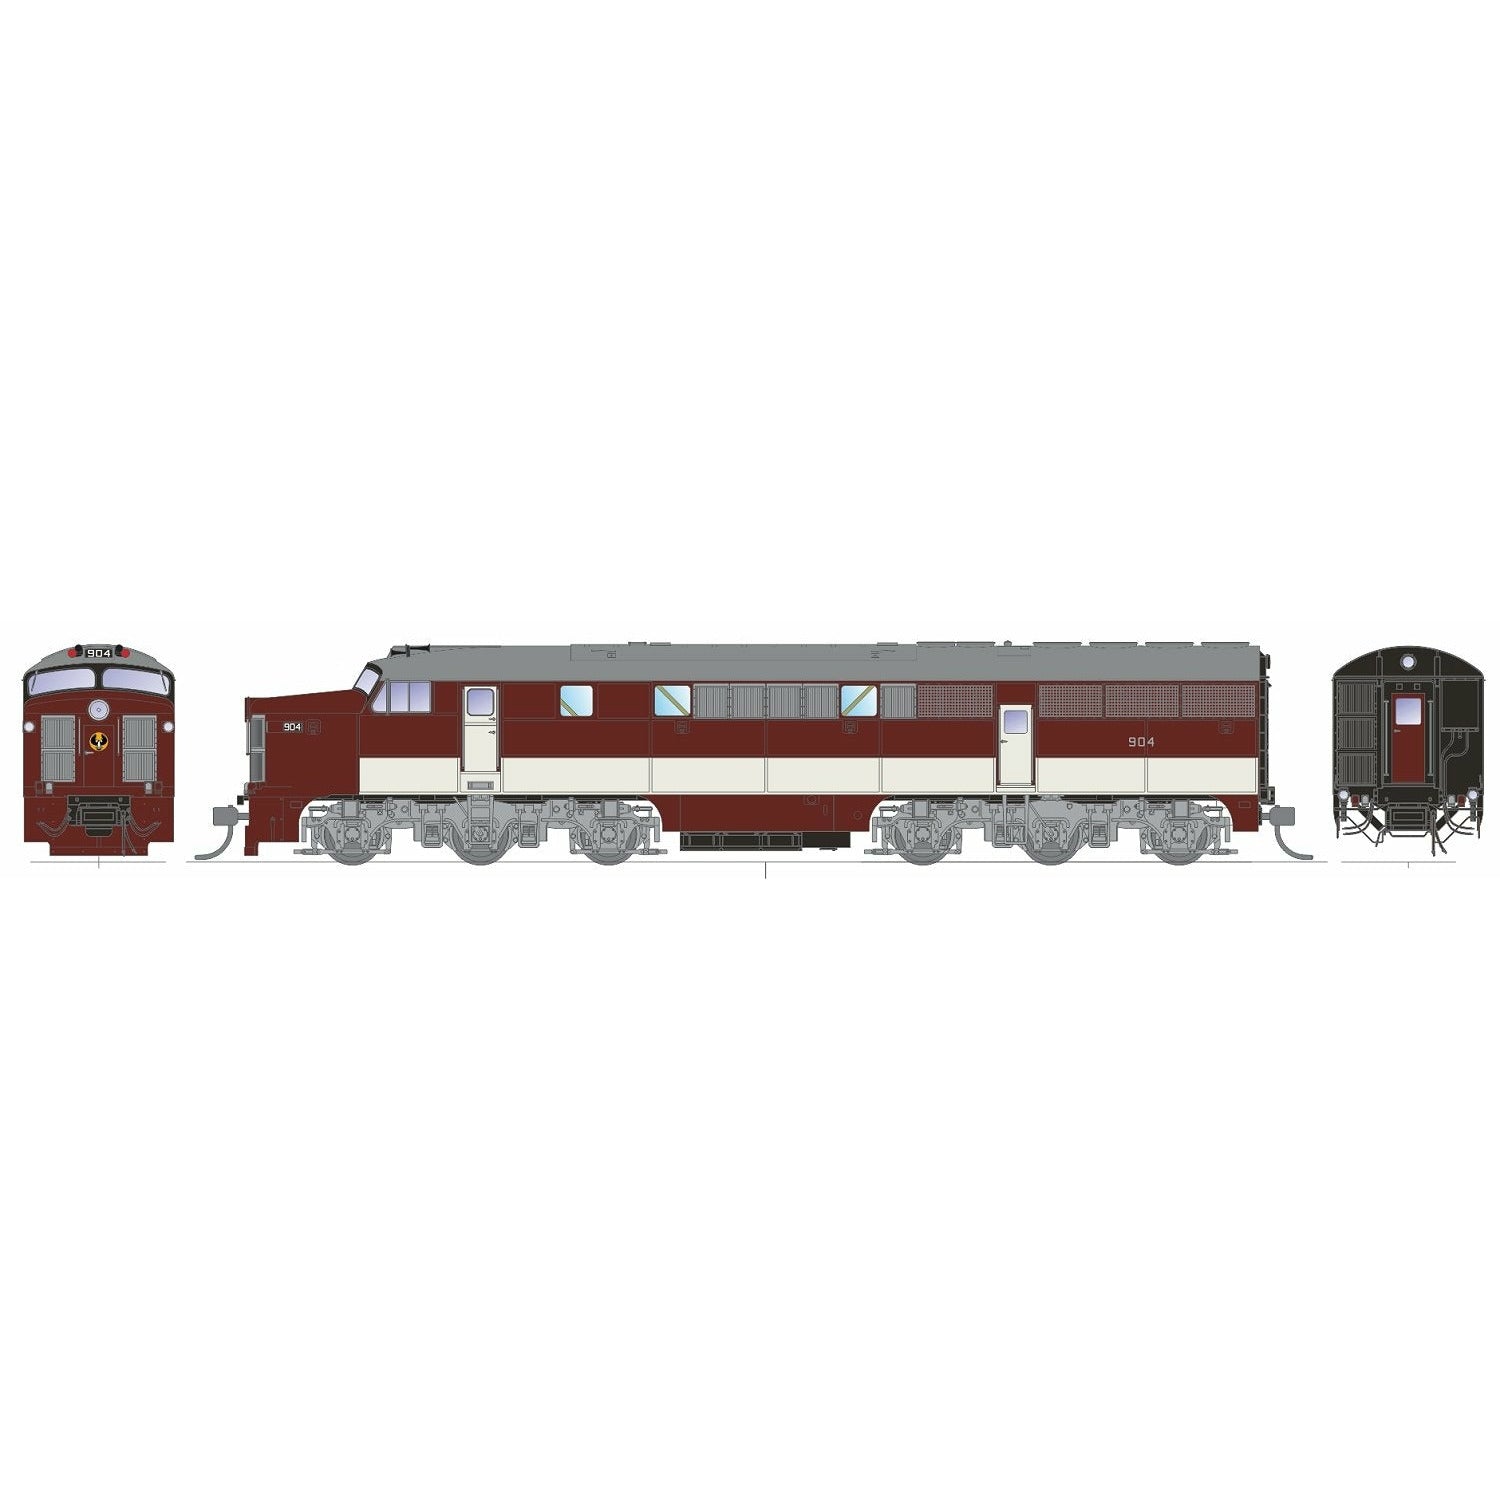 SDS MODELS HO 900 Class Locomotive #904 SAR 1960 -